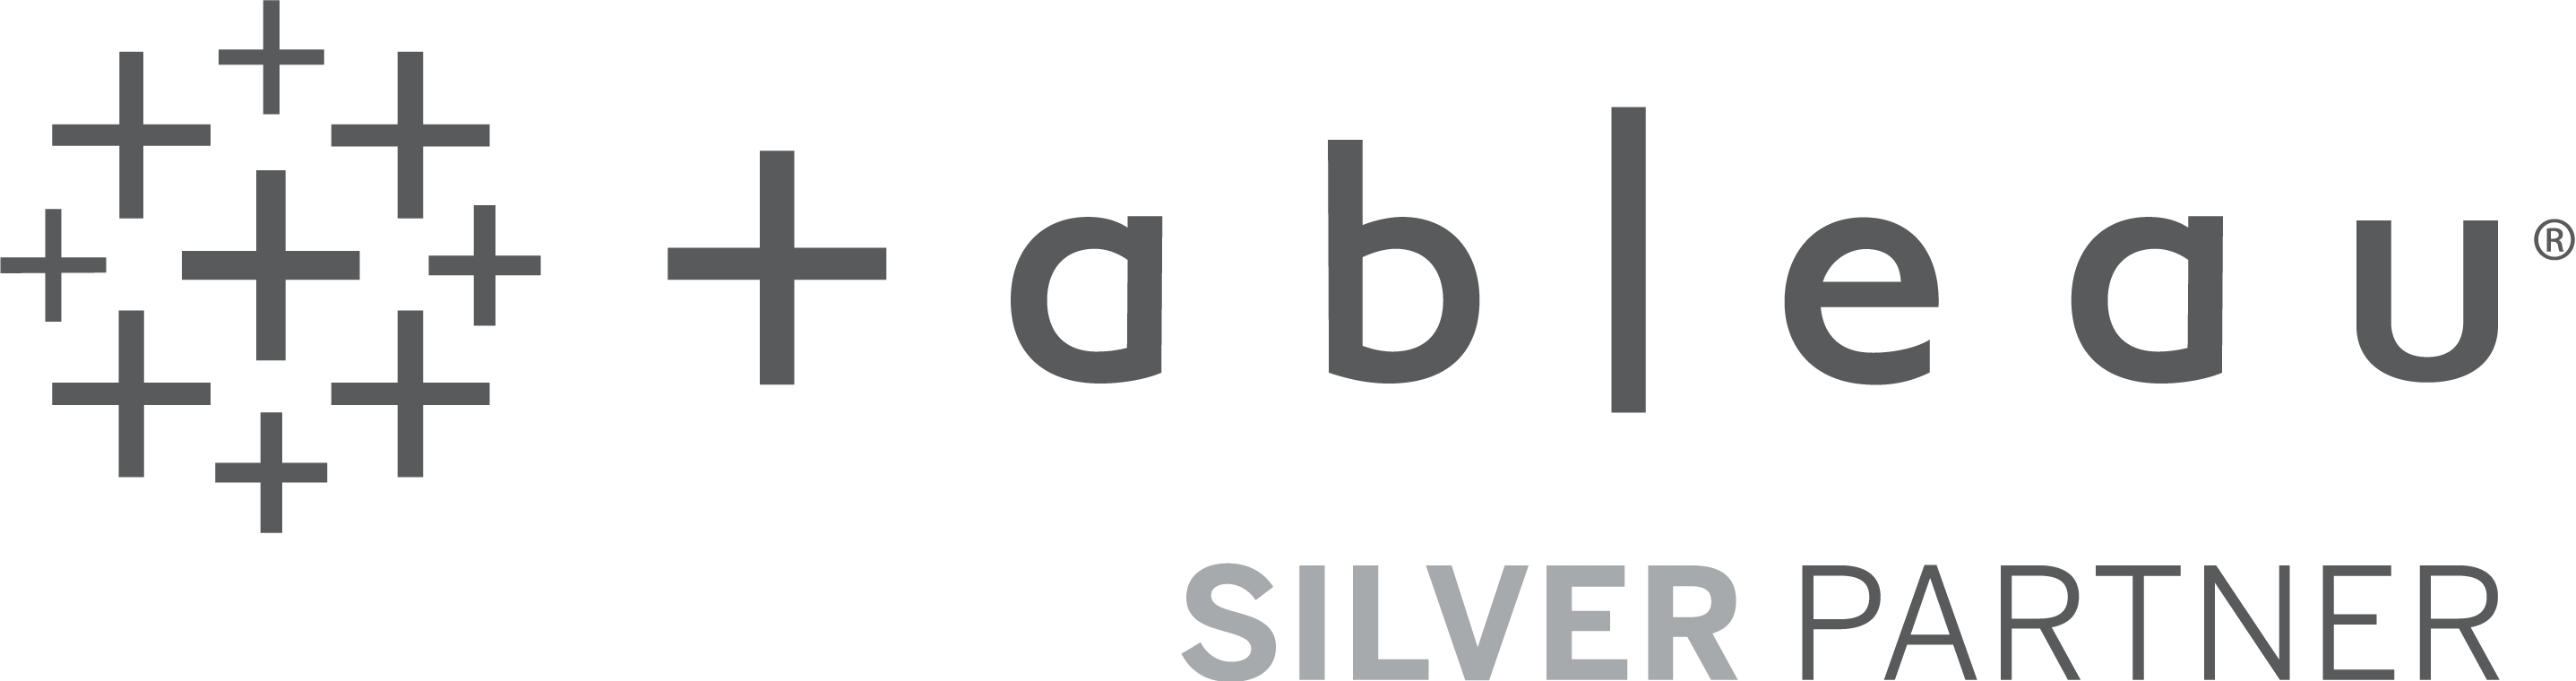 Tableau Software Silver Partner Logo PNG